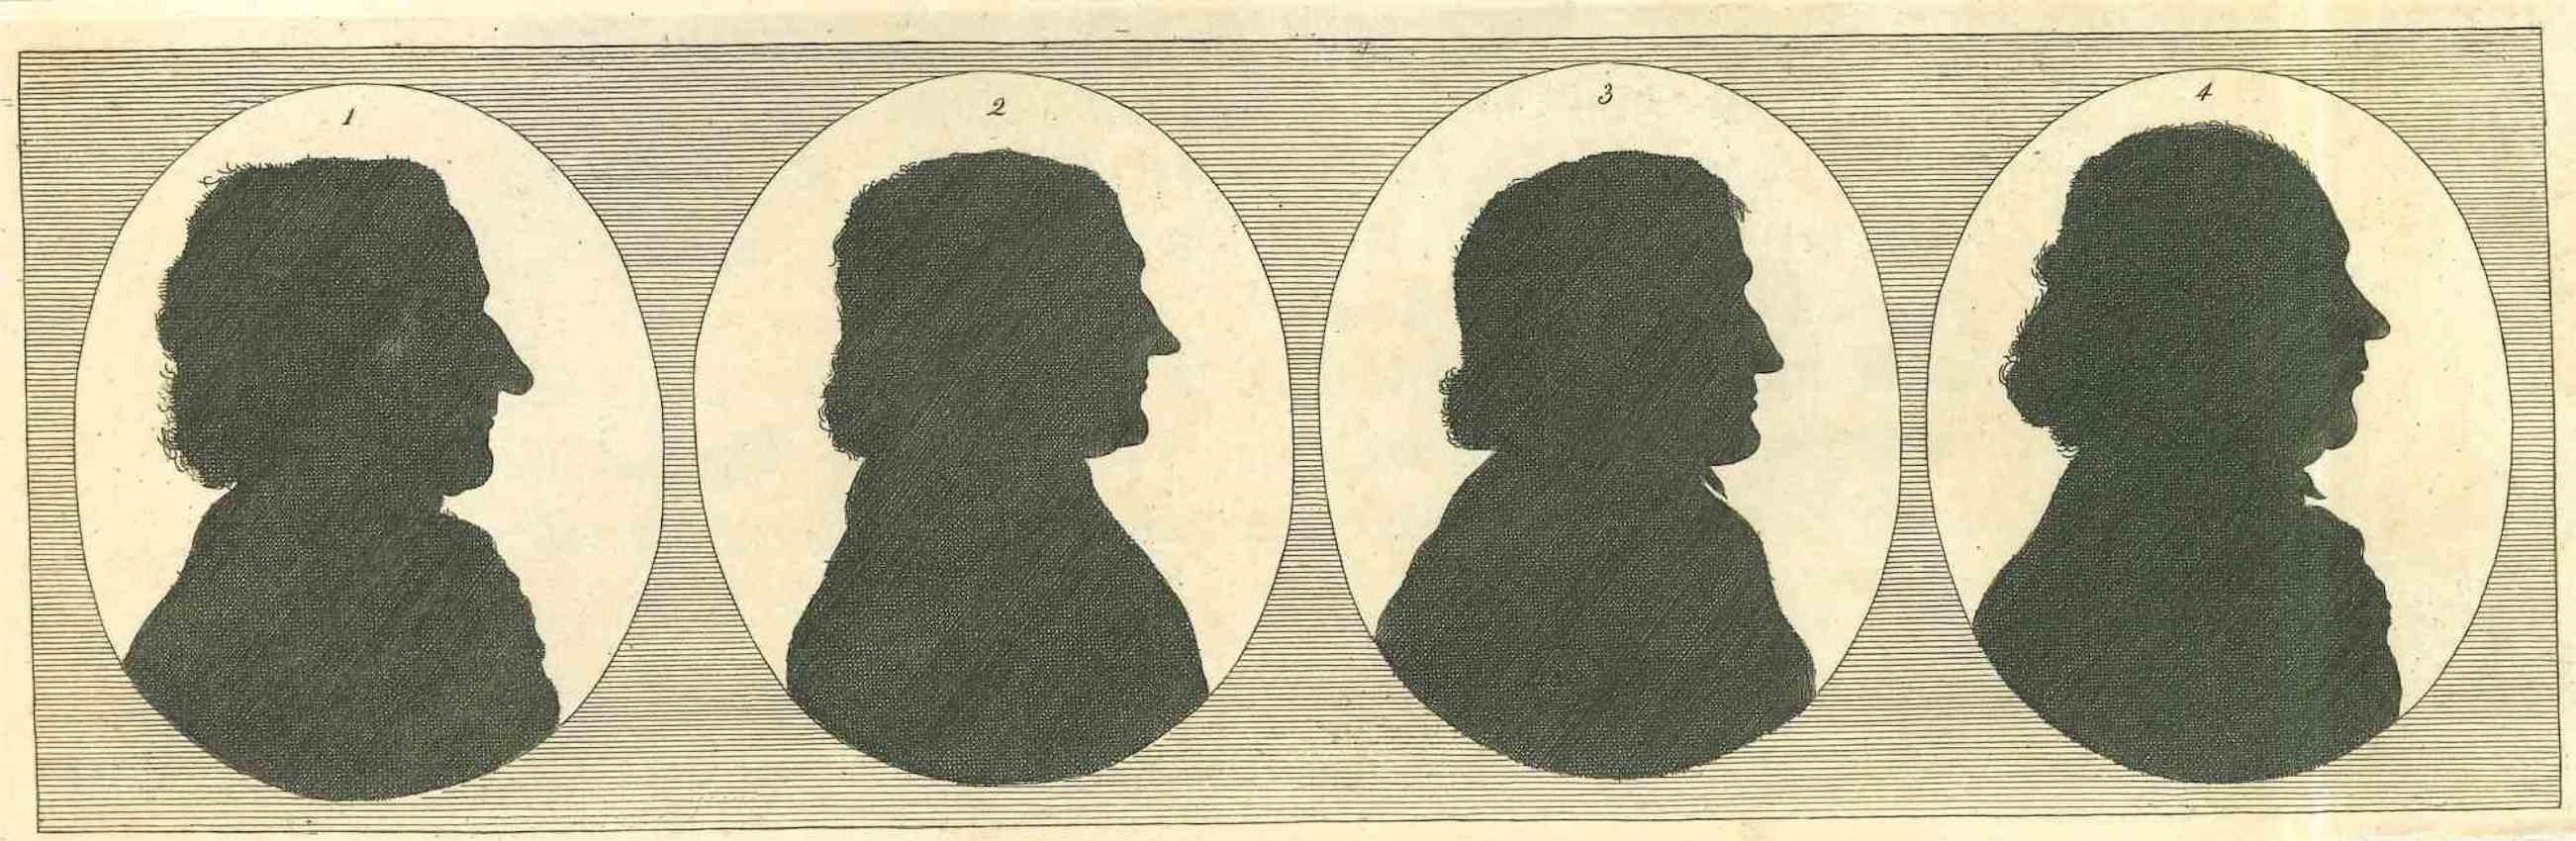 The Silhouette Profiles - The Physiognomy ist eine Originalradierung von Thomas Holloway für Johann Caspar Lavaters "Essays on Physiognomy, Designed to Promote the Knowledge and the Love of Mankind", London, Bensley, 1810. 

Gute Bedingungen.

Mit